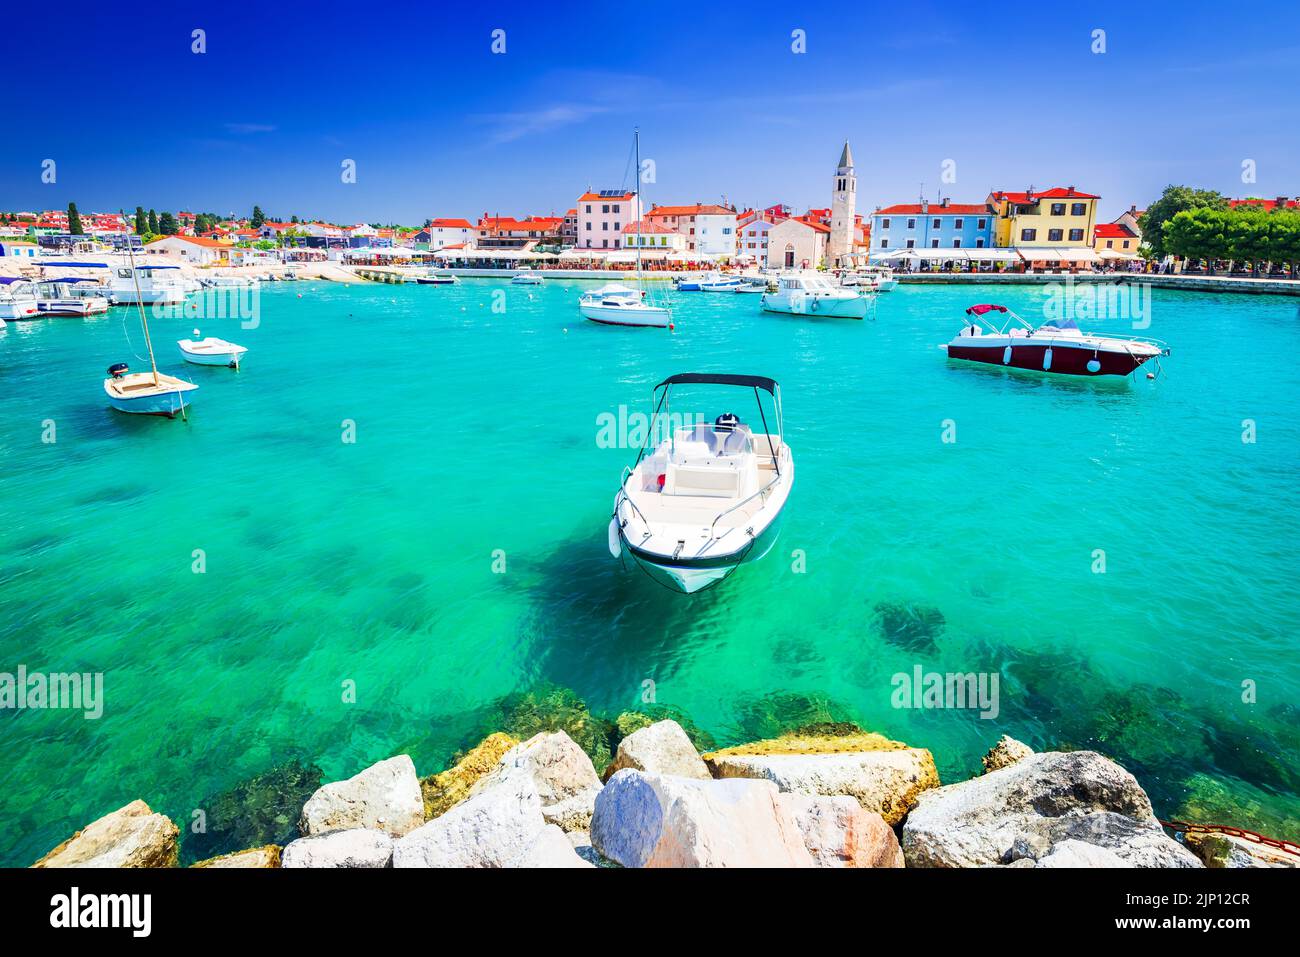 Fazana, Croatia. Marina of idyllic small town Fazana, waterfront view on Istria peninsula of Adriatic Sea. Stock Photo